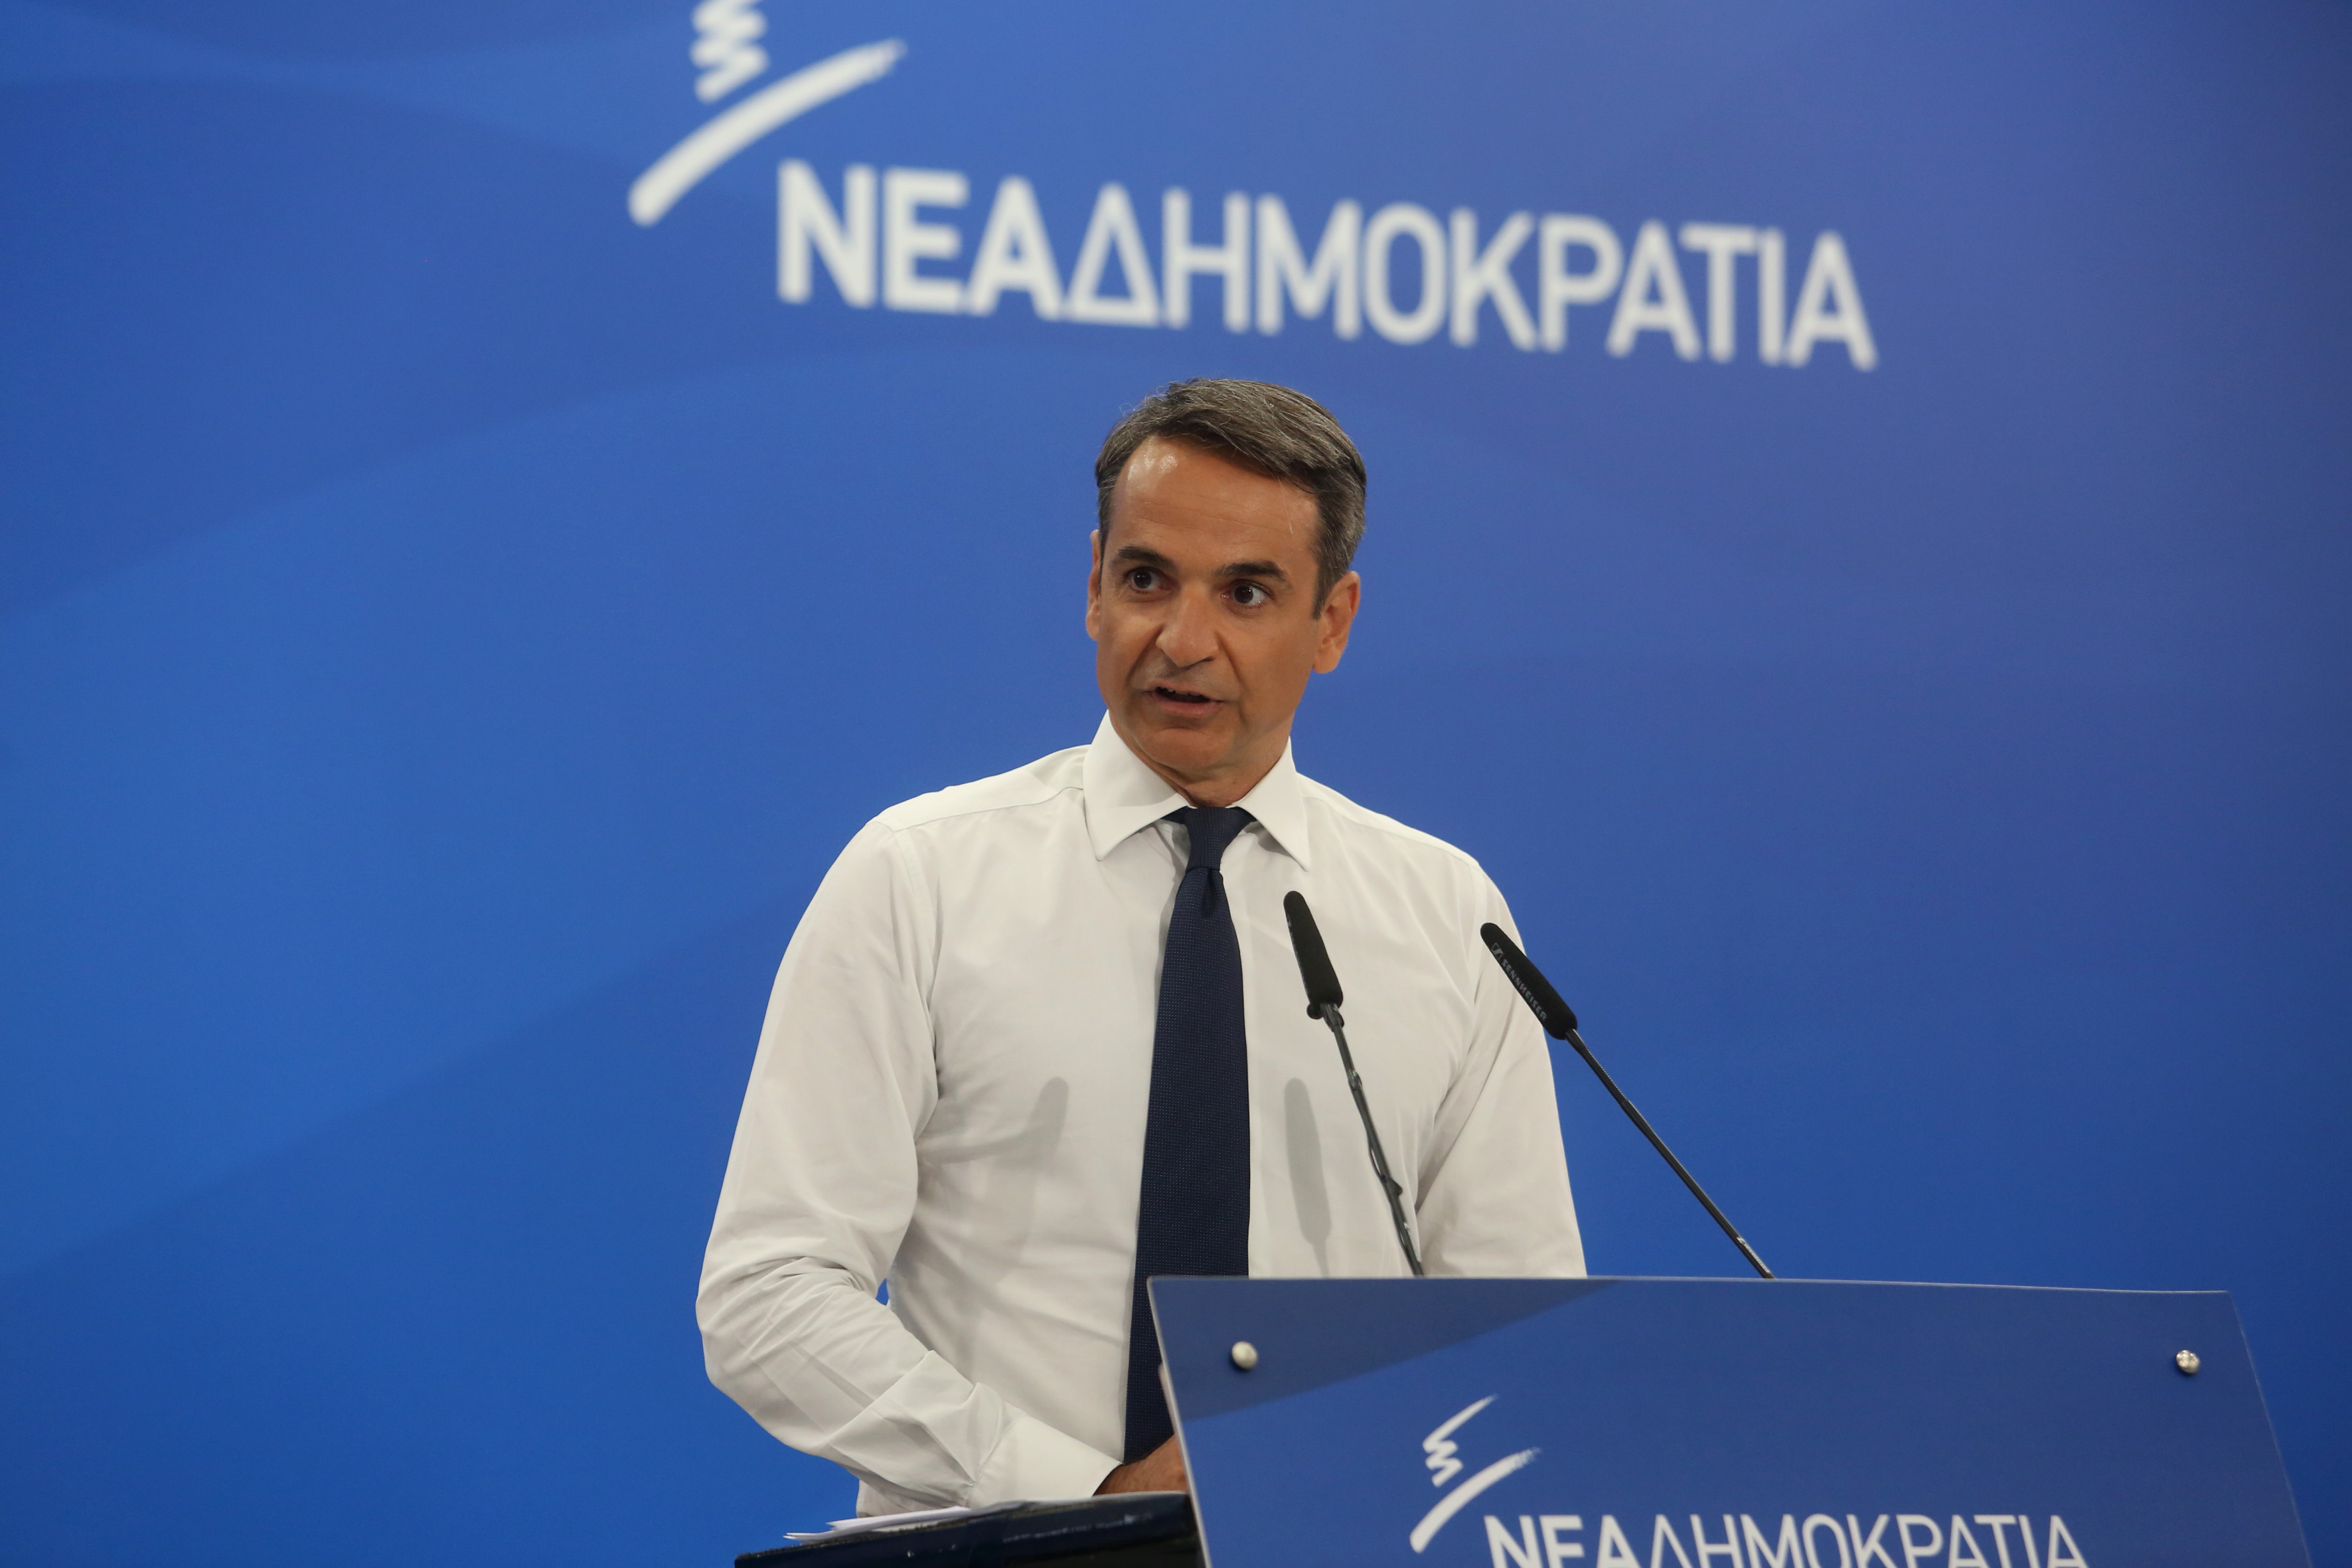 Μητσοτάκης: Ο Τσίπρας αντιπροσωπεύει το χθες – Δεν μπορεί να μιλήσει για το αισιόδοξο αύριο της Ελλάδας